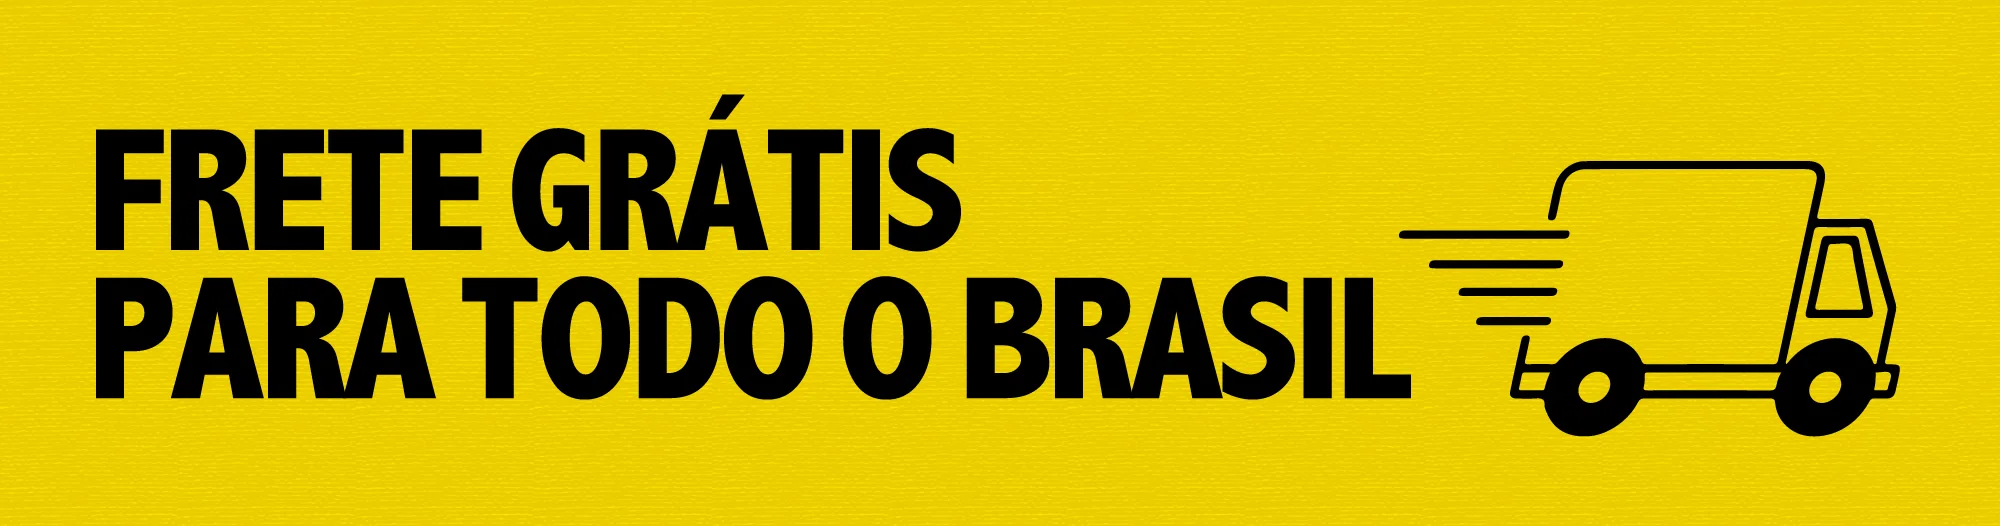 Banner frete-gratis brasil